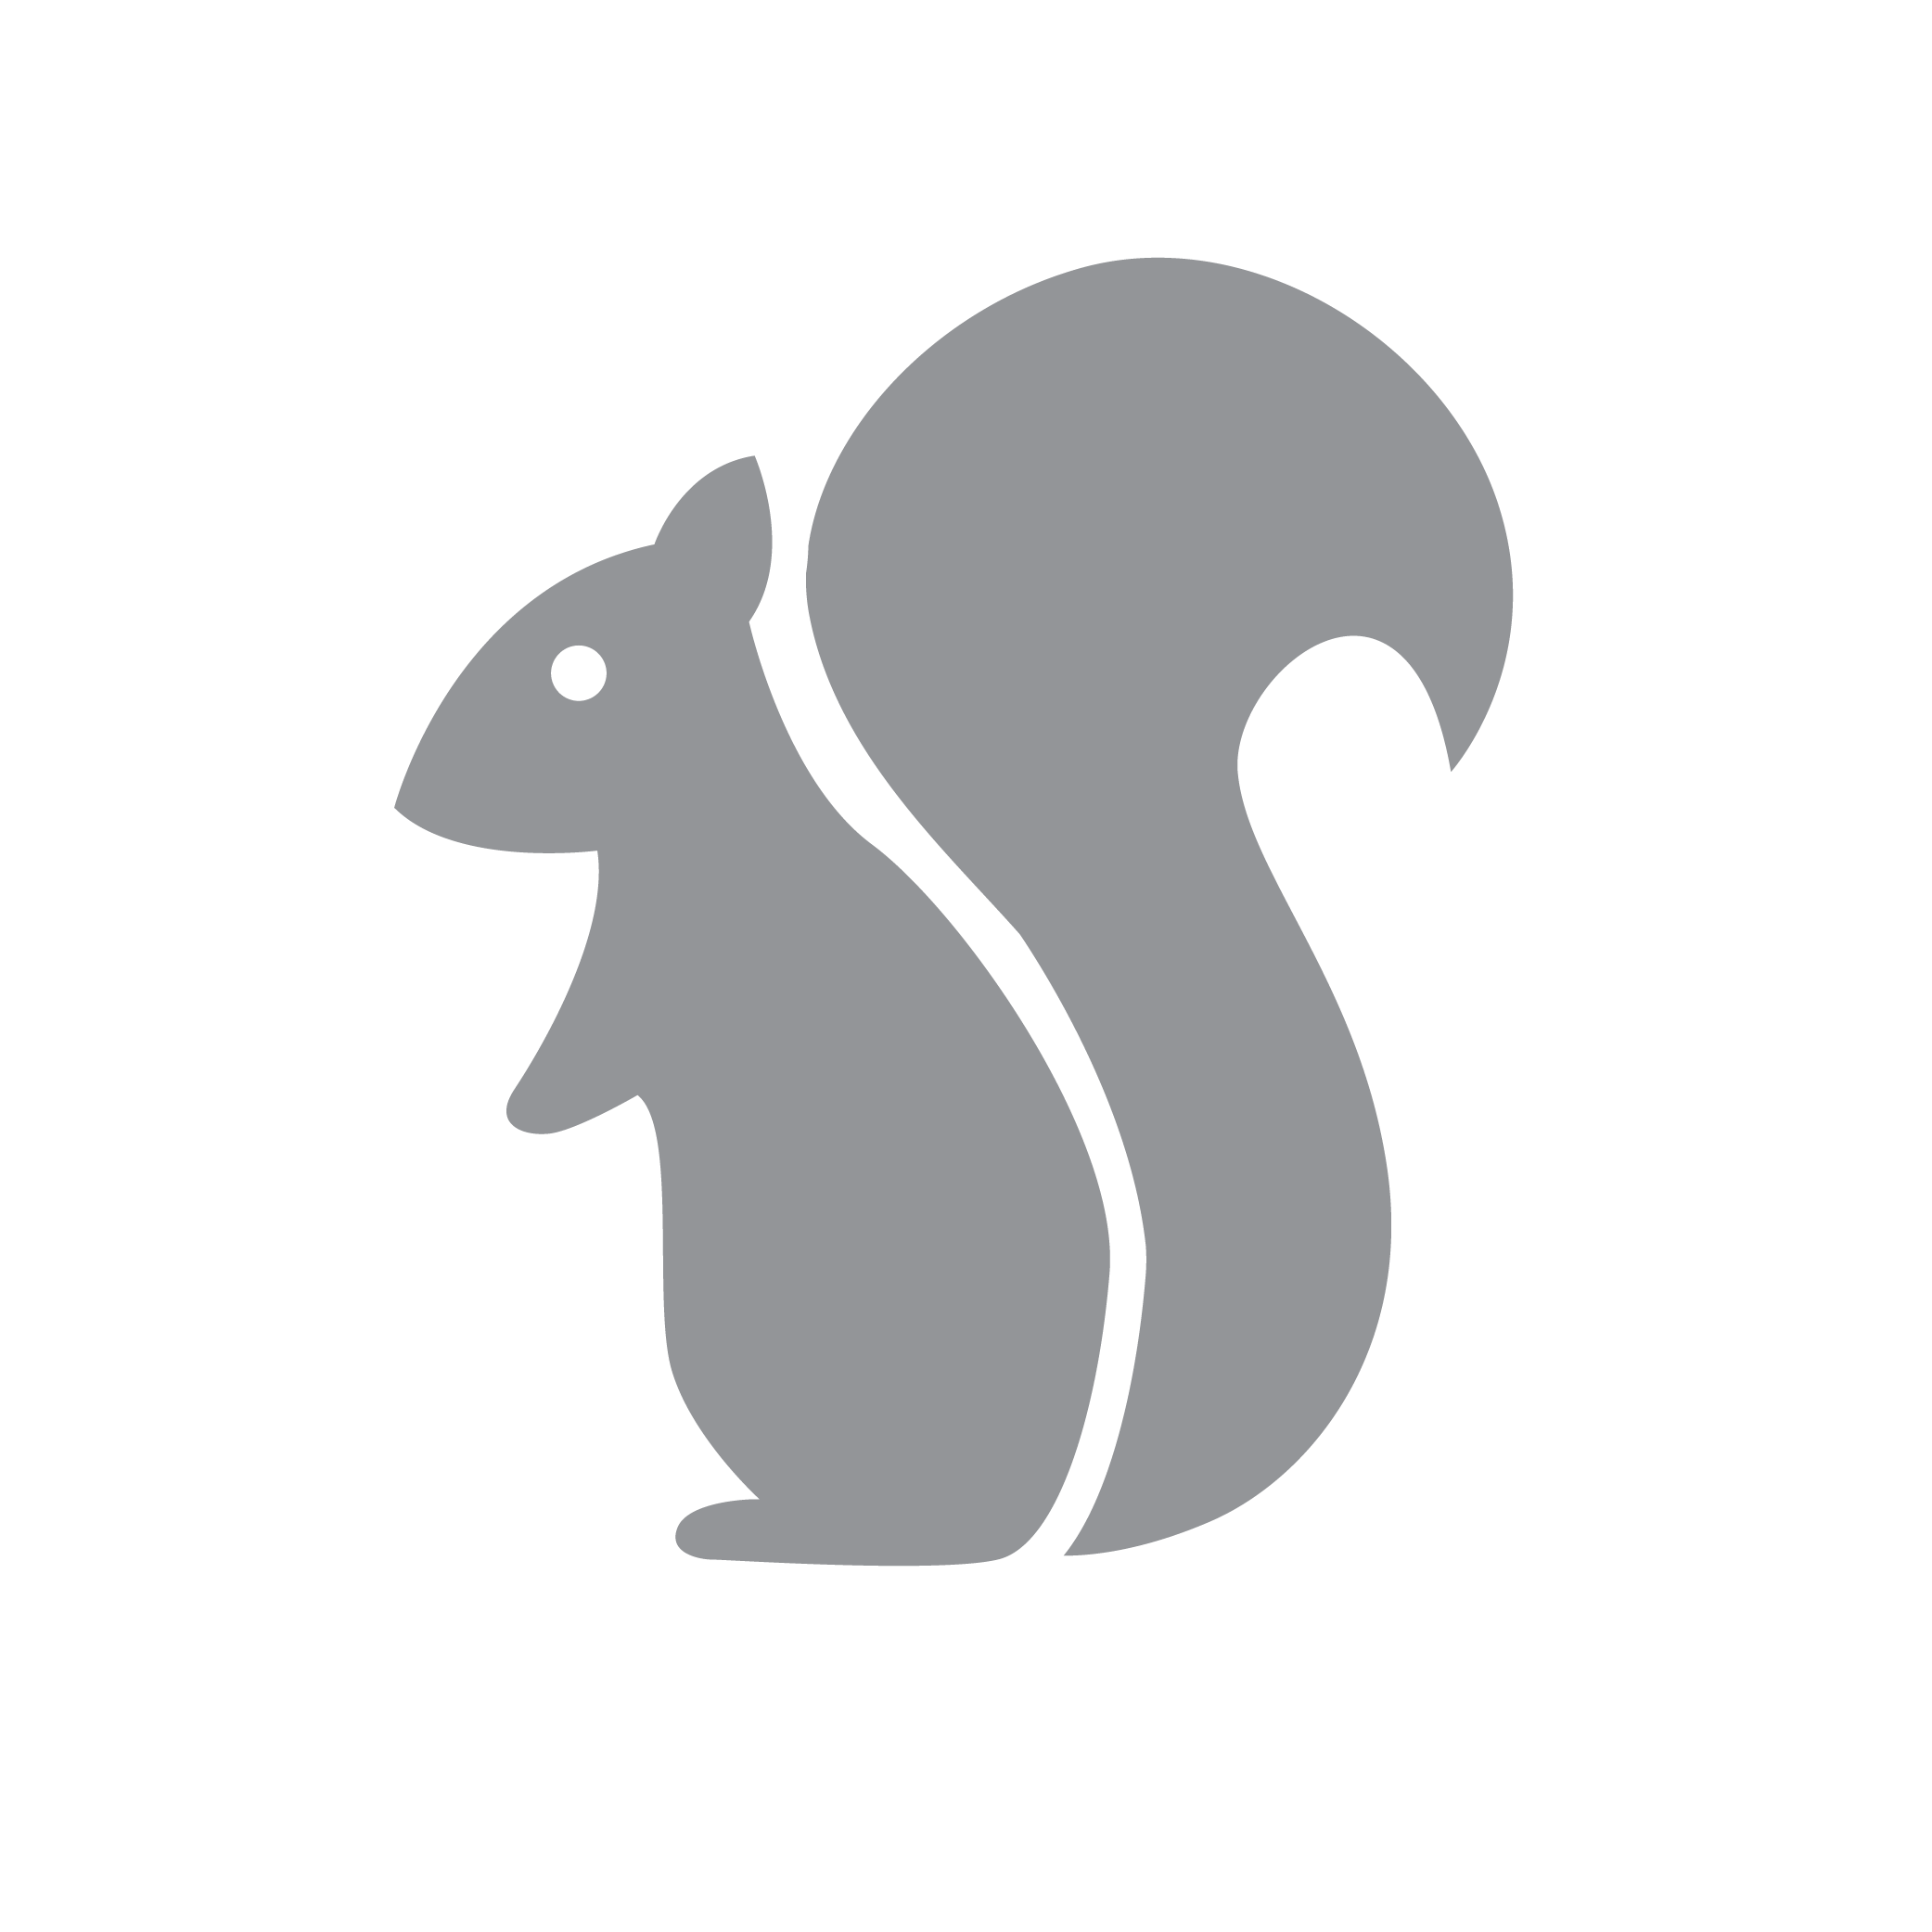 squirrel silhouette
